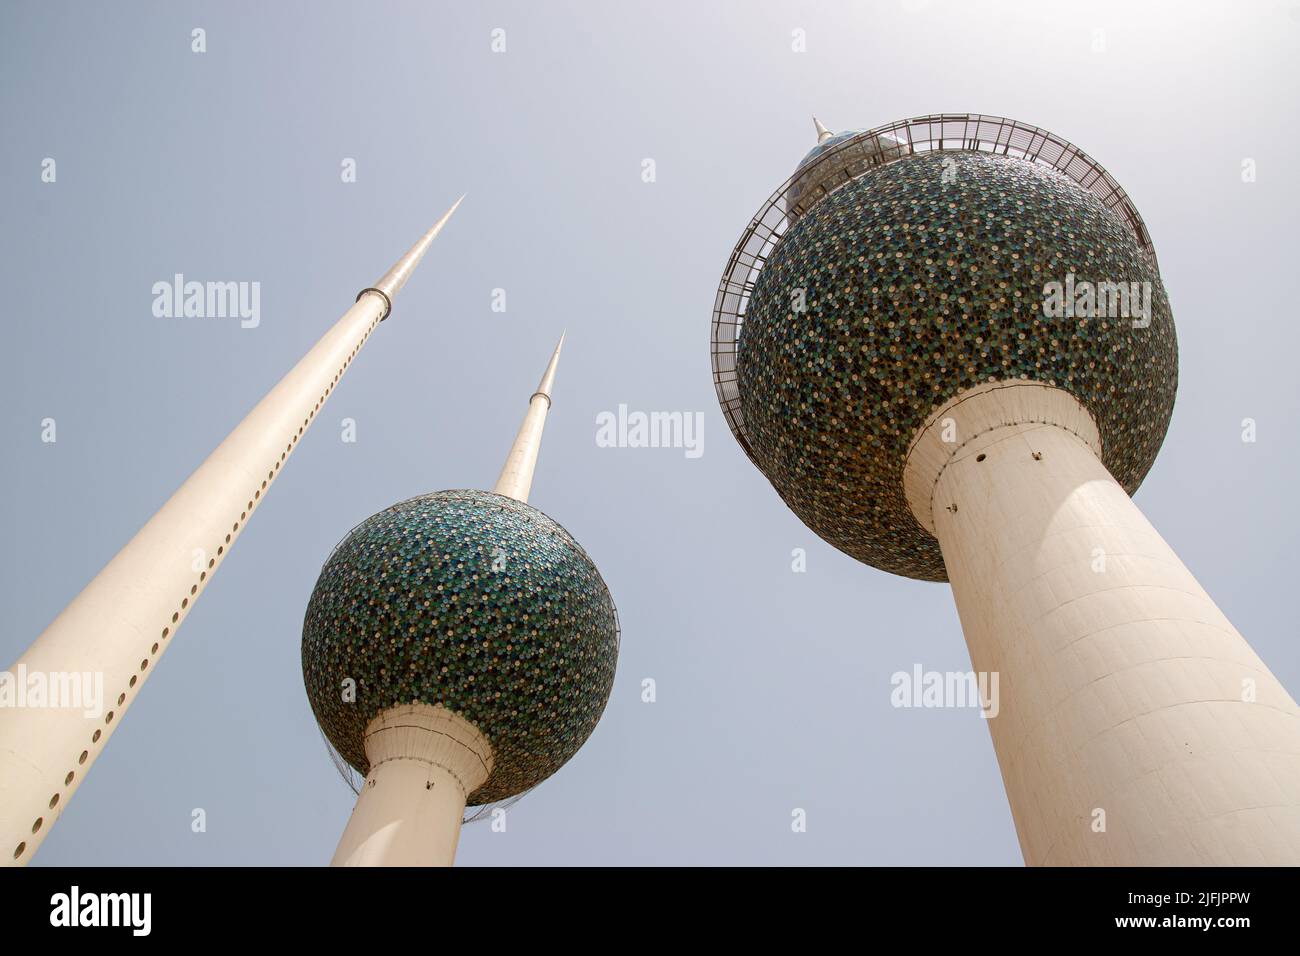 The Kuwaiti Towers Stock Photo